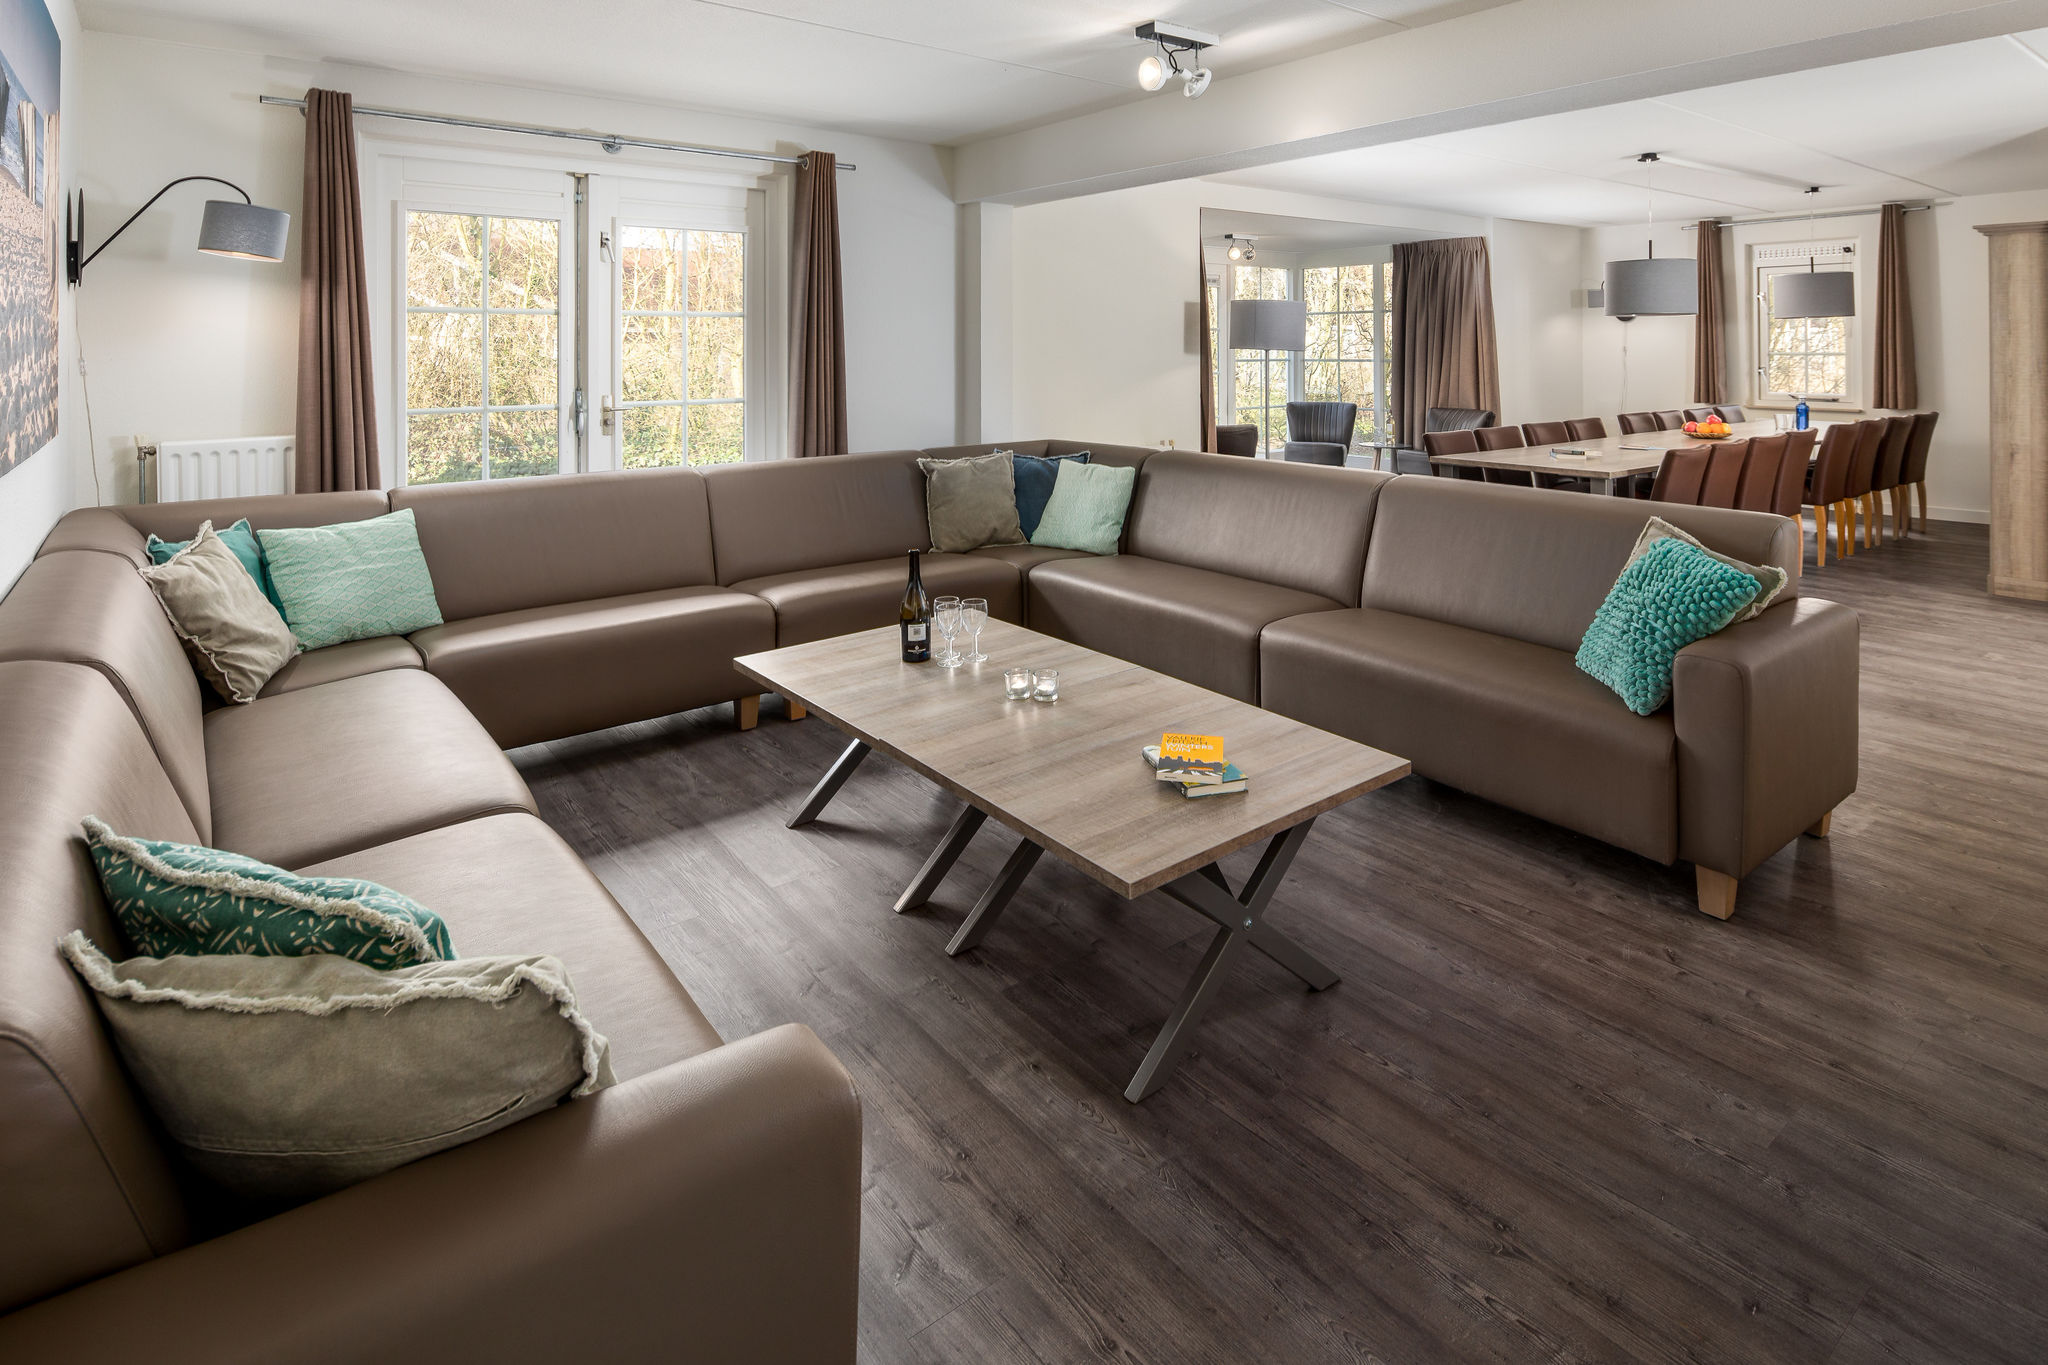 Neu gestaltete geräumige Villa mit Bad in Domburg